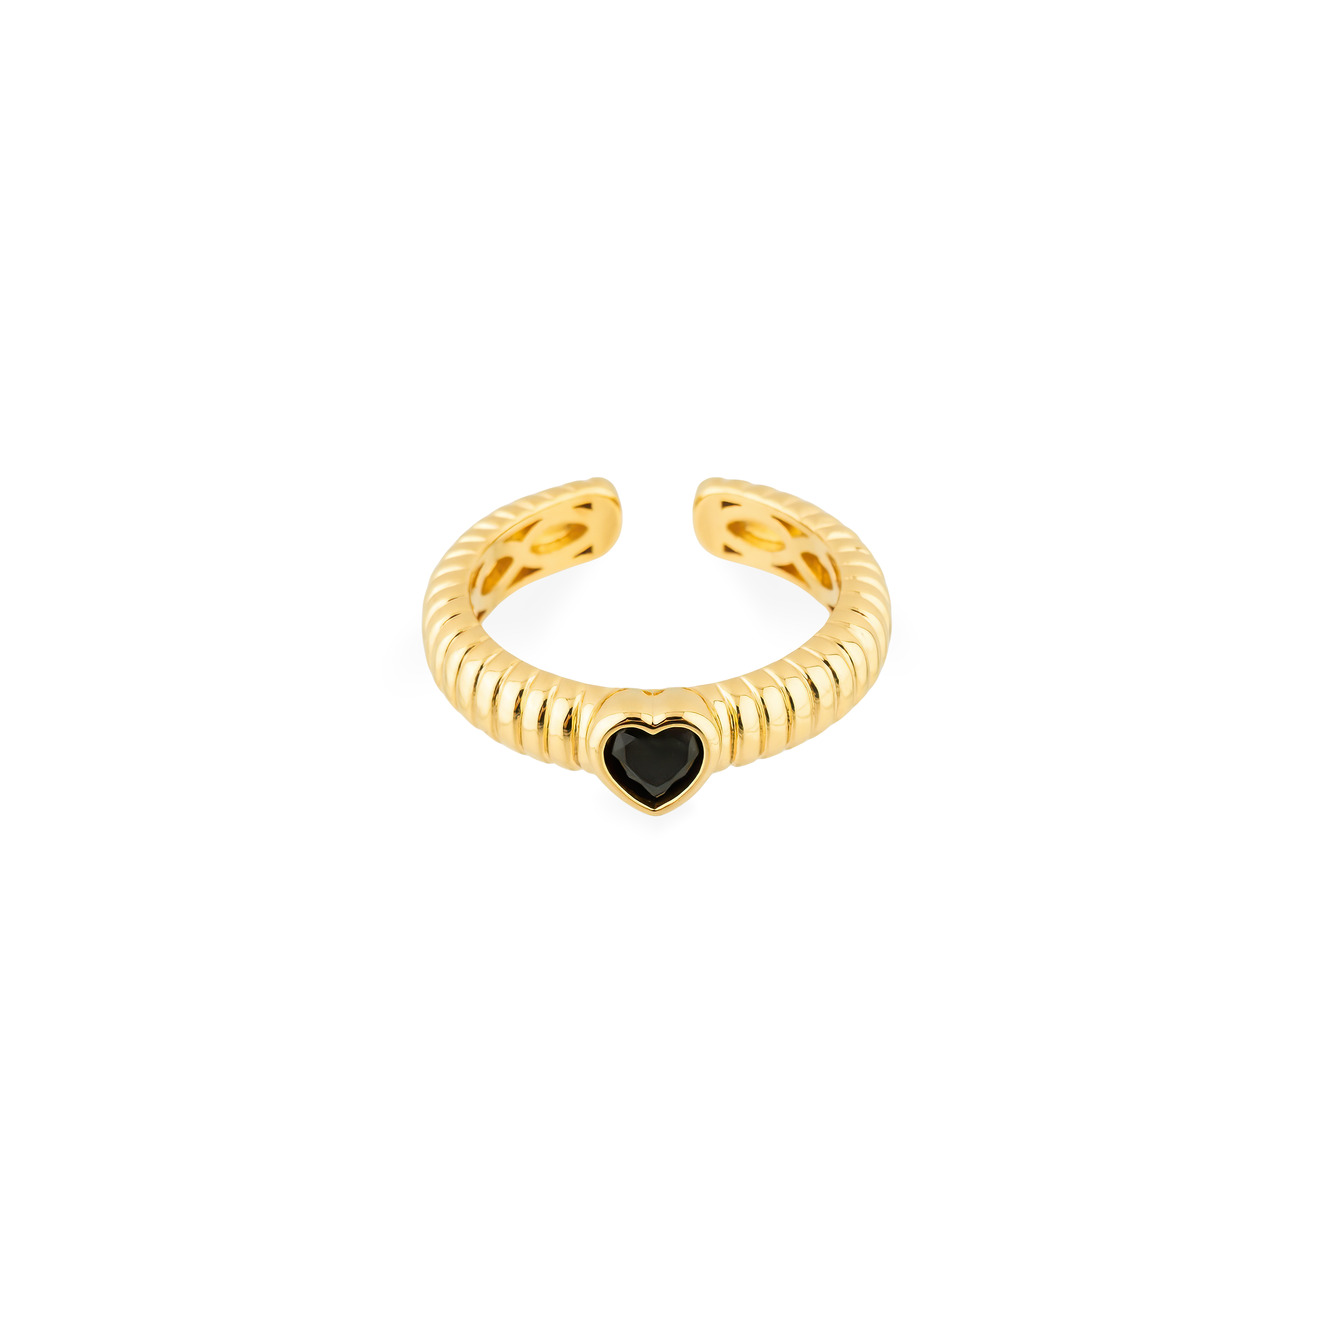 Herald Percy Золотистое фигурное кольцо с черным сердцем herald percy серебристое фигурное кольцо с черным сердцем